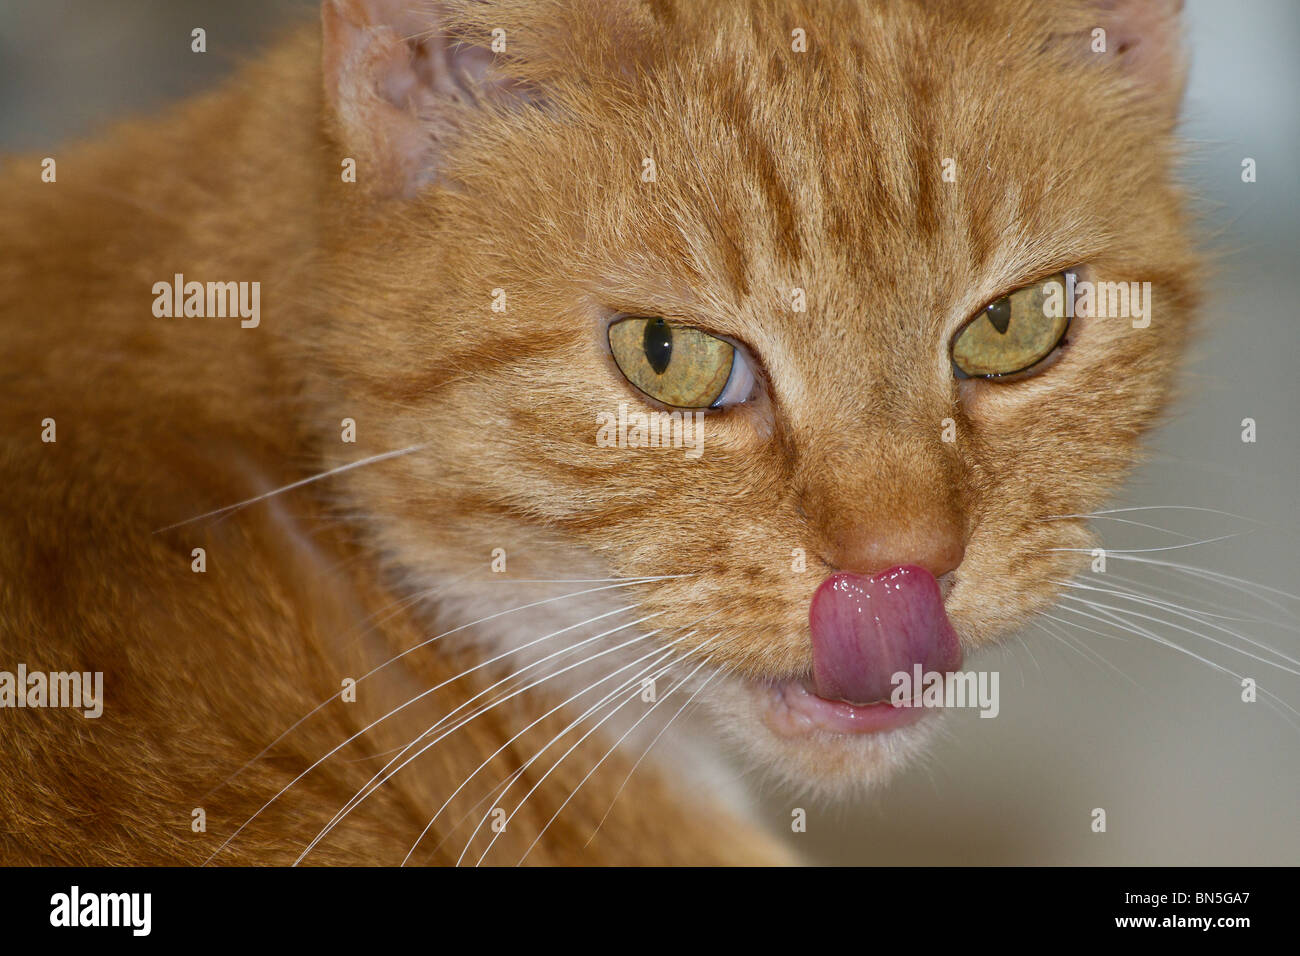 Une seule femelle adulte Ginger cat (Felis catus) lécher ses lèvres et de toucher son nez avec sa langue Banque D'Images